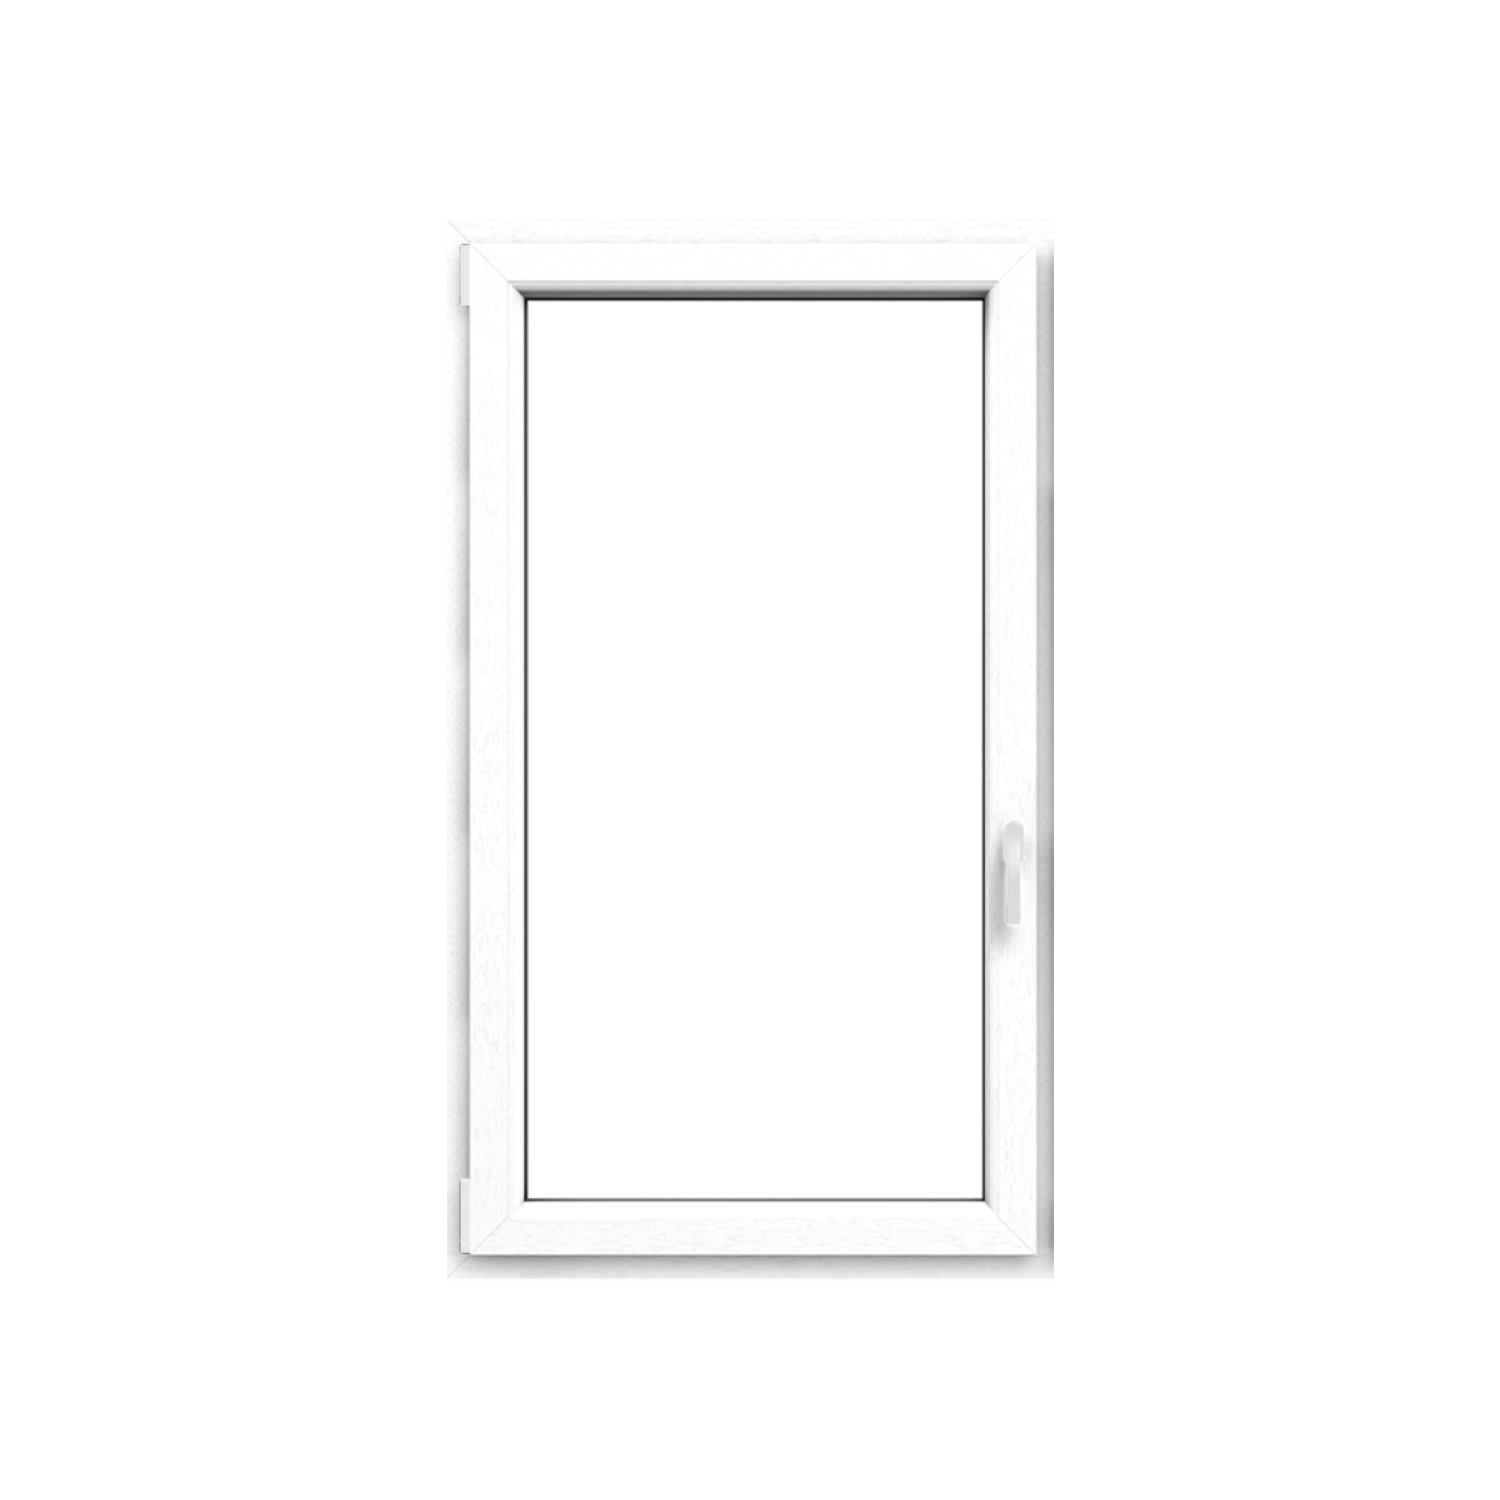 Okno plastové EKOSUN 6 bílé, OS1A 90x90 P, trojsklo, 6kom/81mm (vč. kliky)